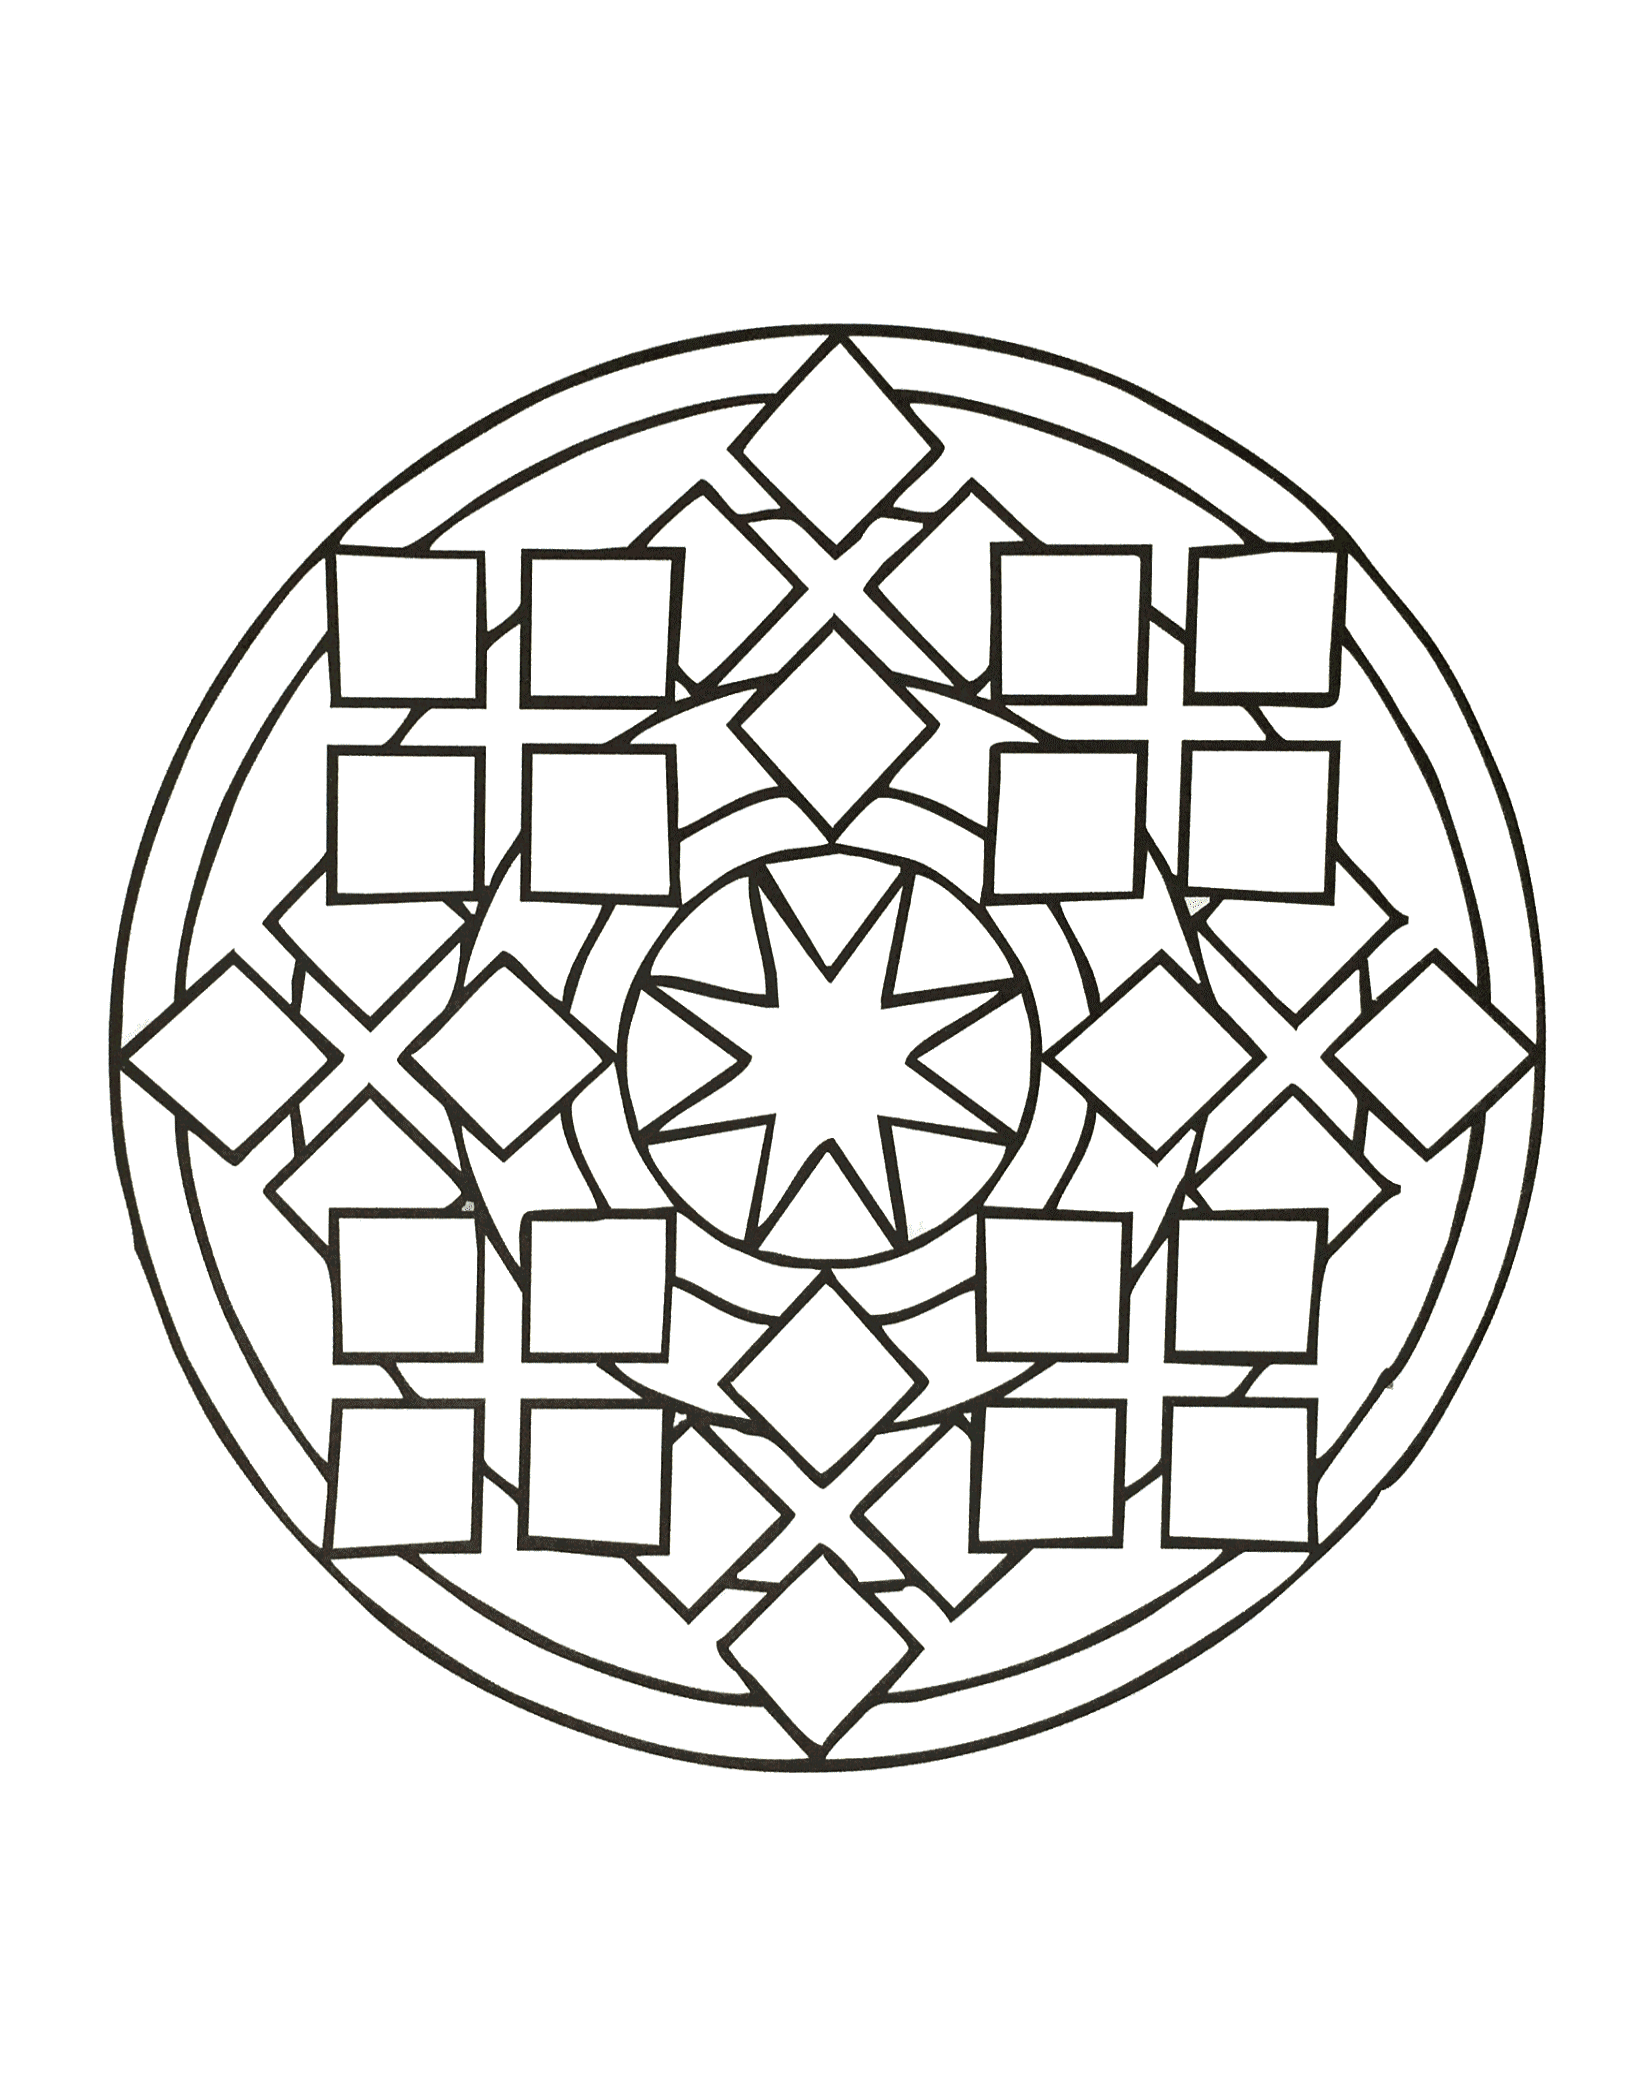 Geometrisch geformtes Mandala, in dem verschiedene geometrische Formen (Quadrate, Rauten, Sterne, Kreise) abgebildet sind.